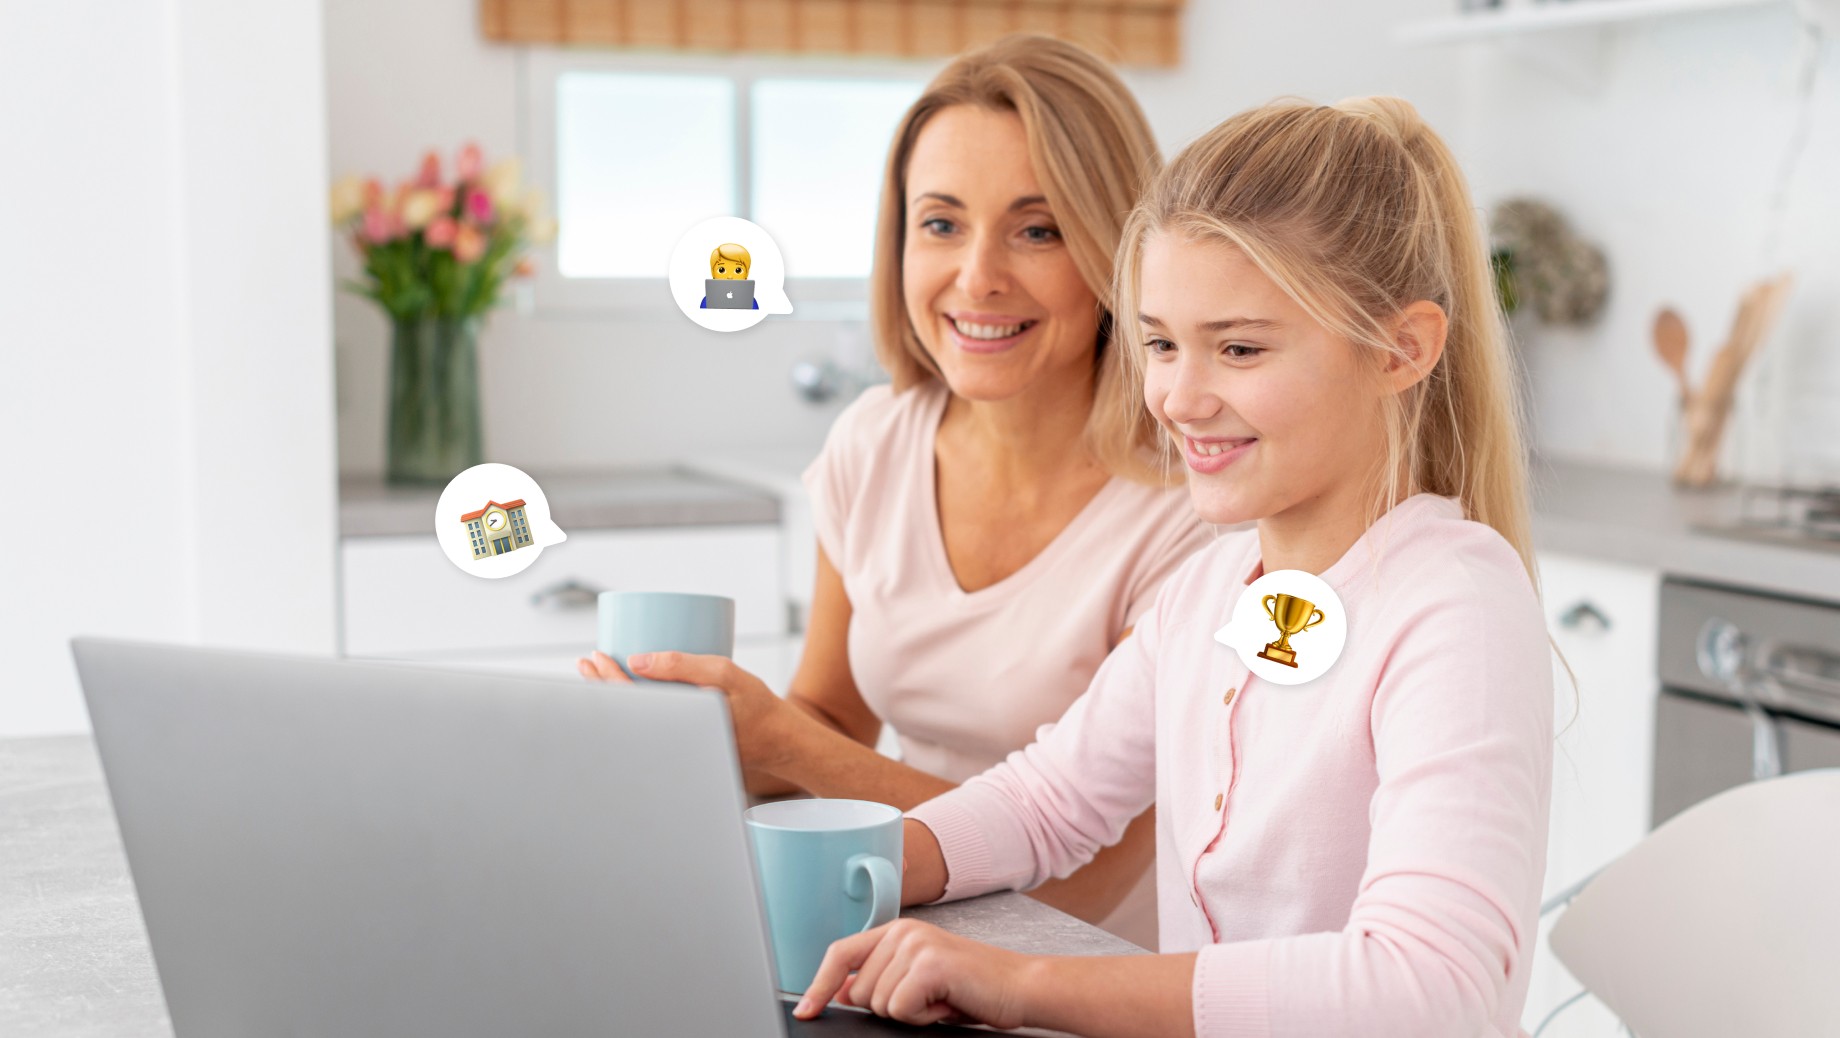 Работа доча. Бизнес мама. Семья за компьютером. Фото с ноутбуком мама с дочкой. Мама за ноутбуком и ребенок за ноутбуком.